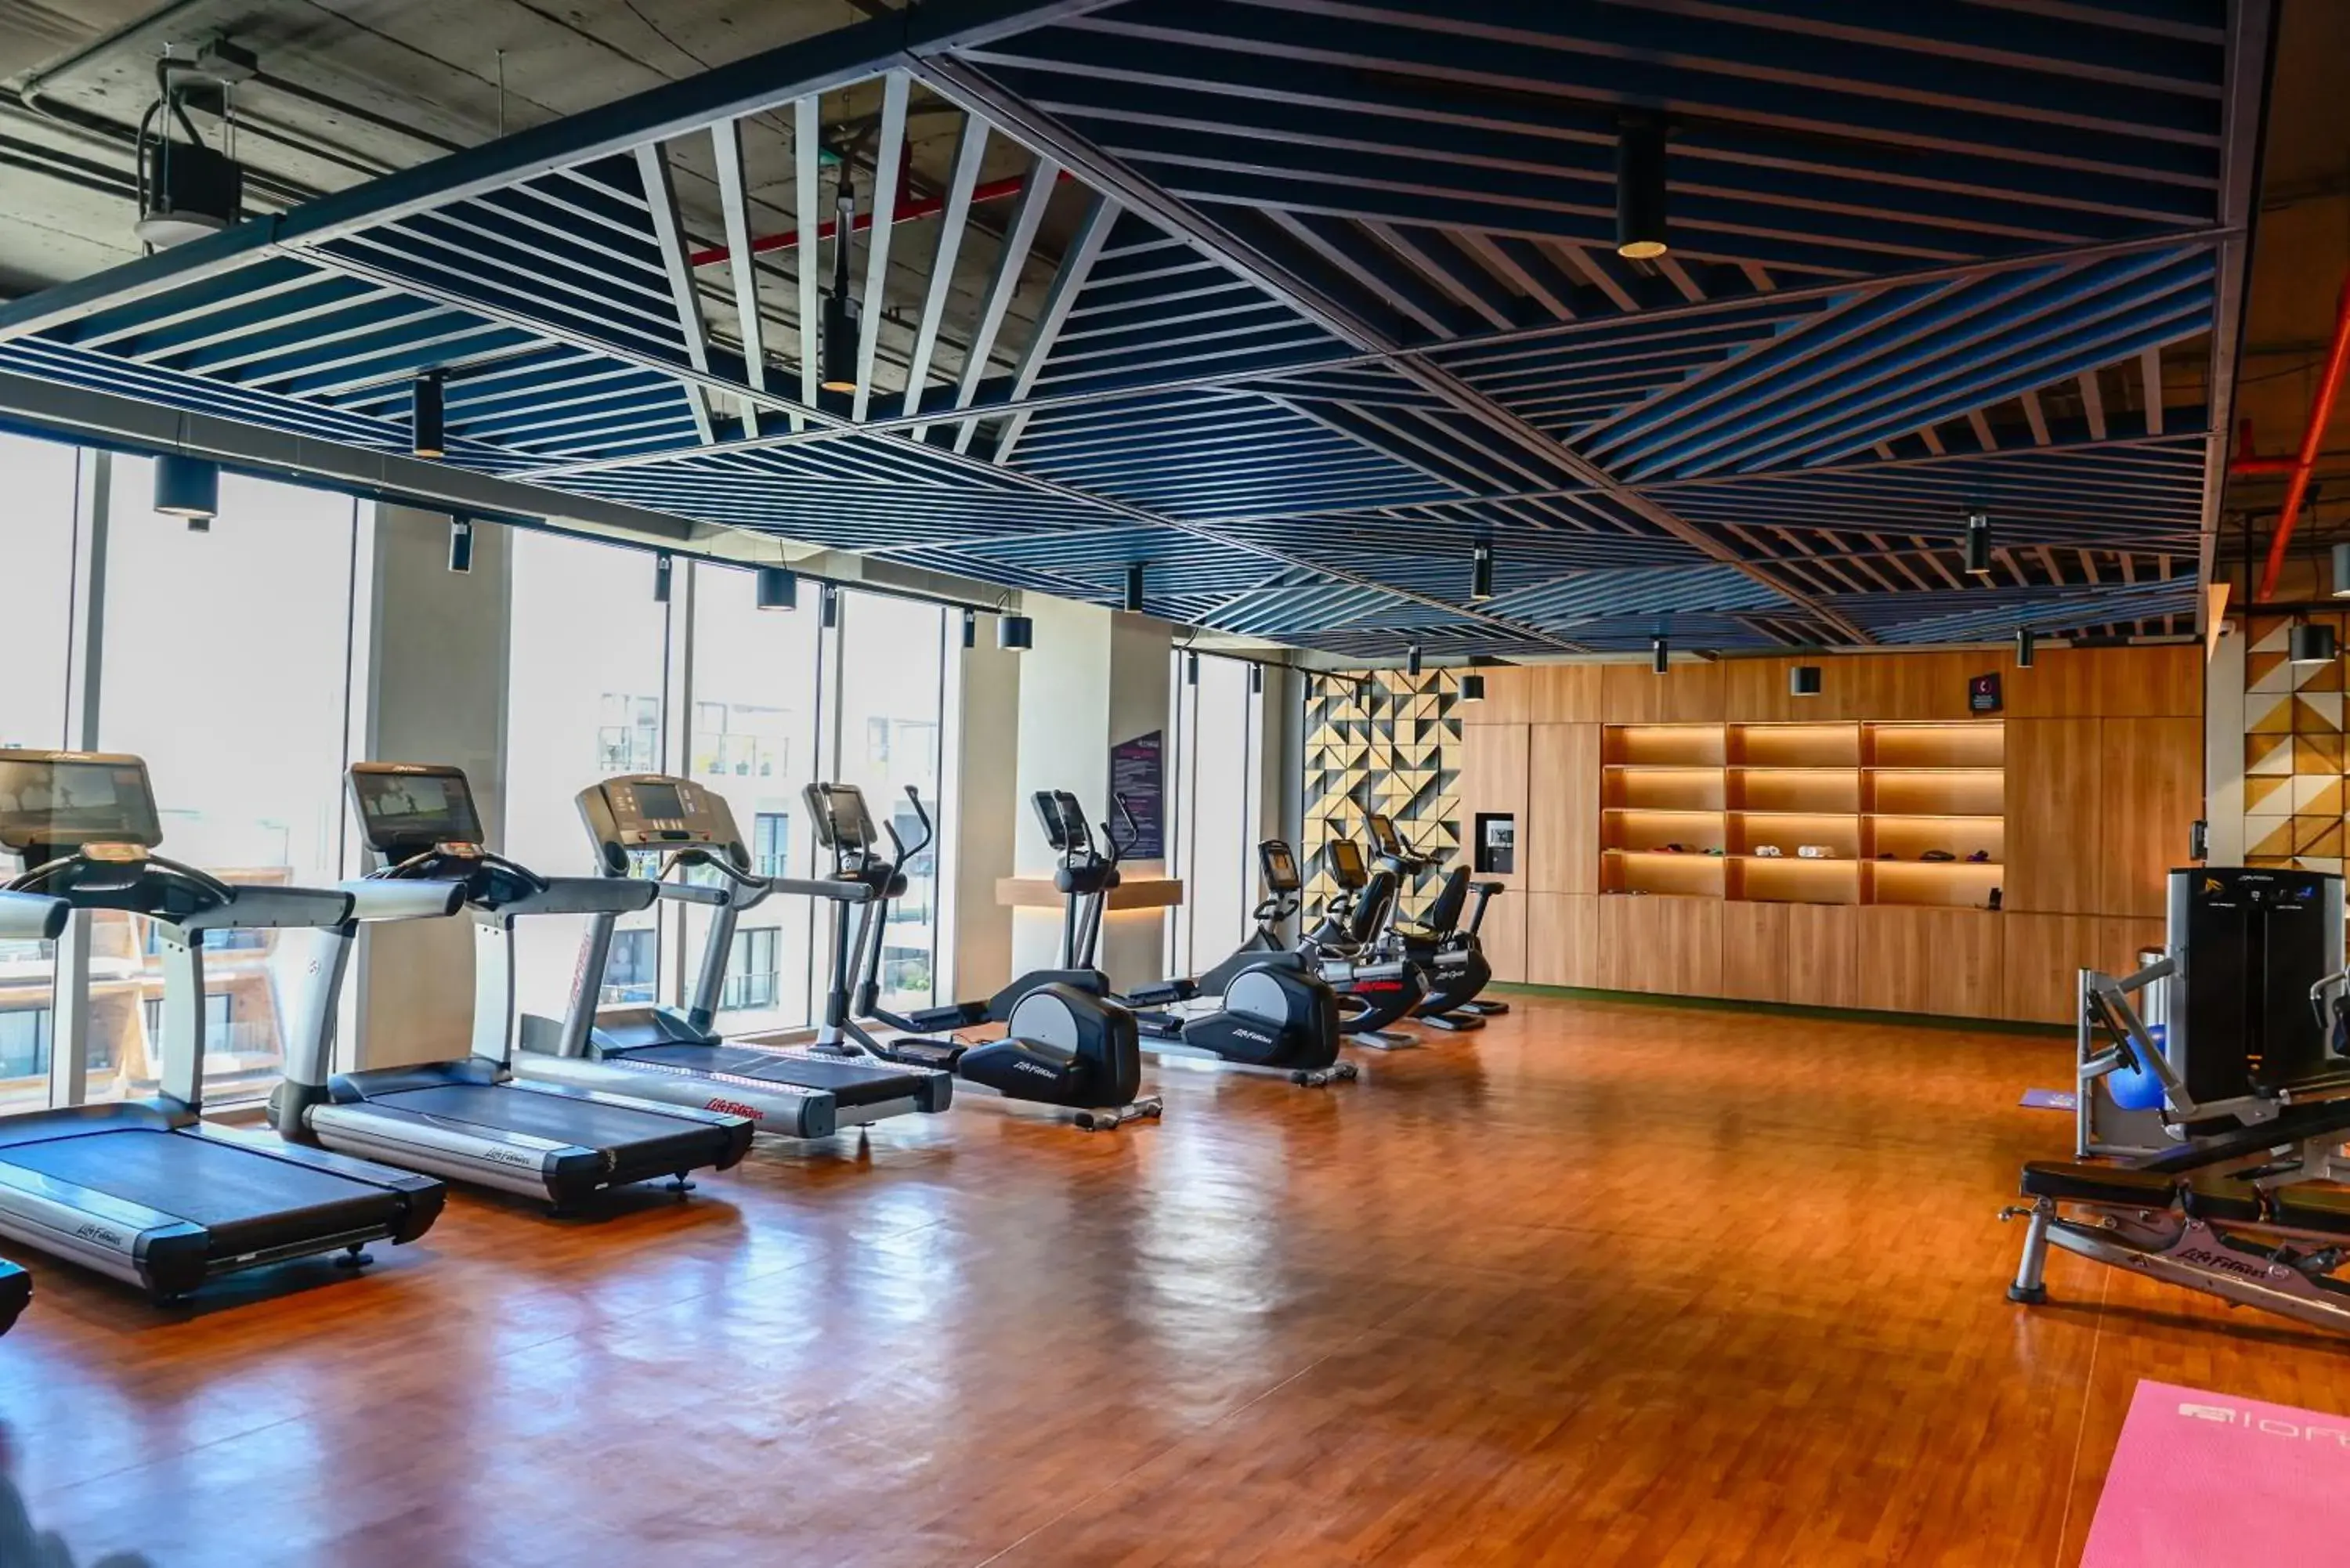 Fitness centre/facilities, Fitness Center/Facilities in Aloft Playa del Carmen